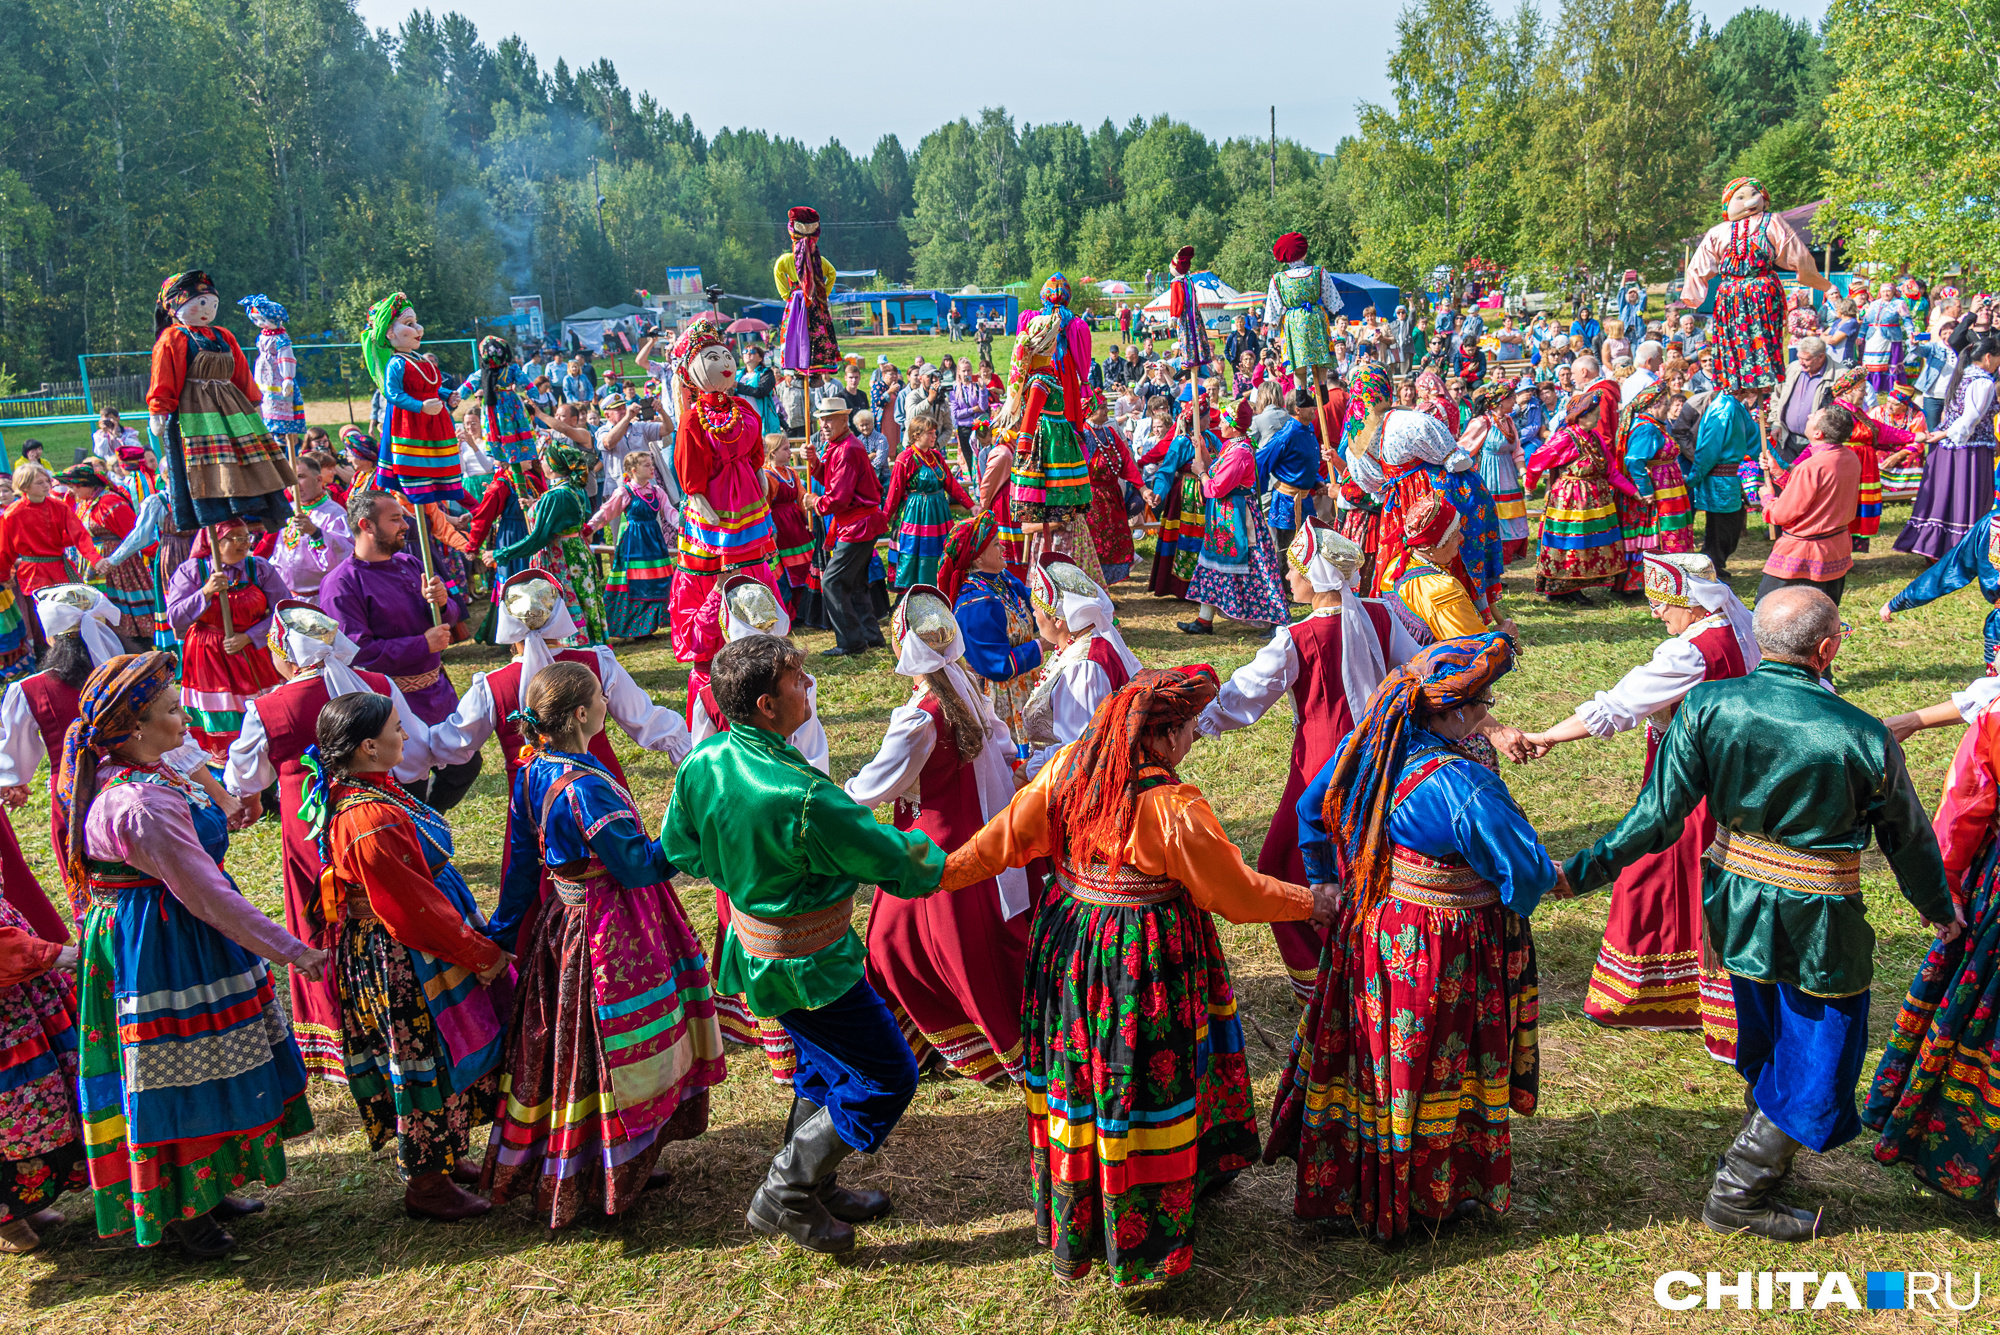 Фестиваль национальных культур с площадками от различных народов пройдет в Чите